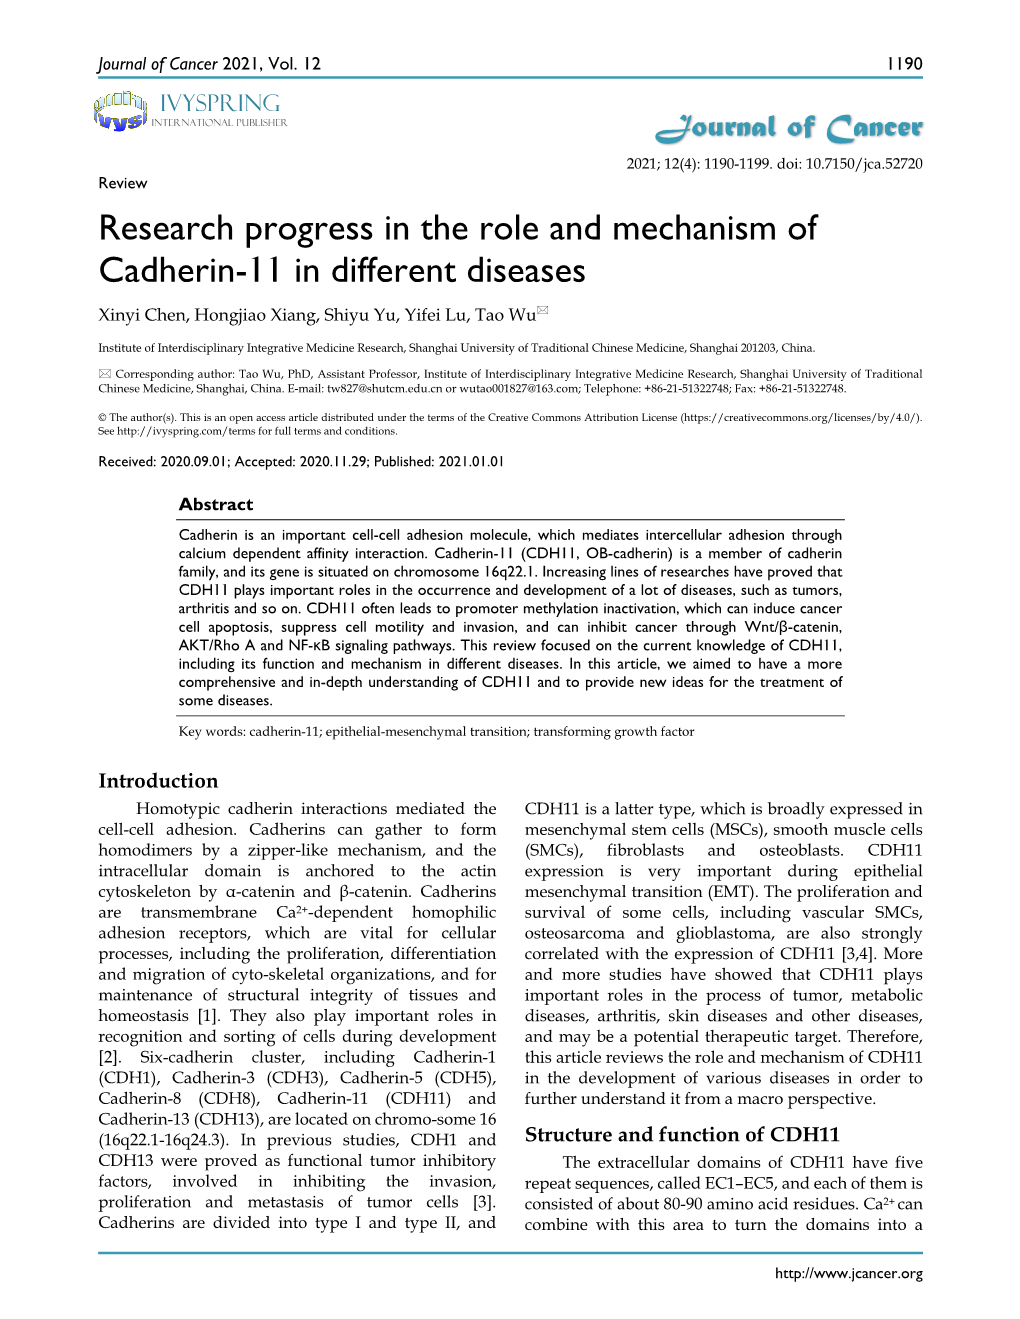 Research Progress in the Role and Mechanism of Cadherin-11 in Different Diseases Xinyi Chen, Hongjiao Xiang, Shiyu Yu, Yifei Lu, Tao Wu